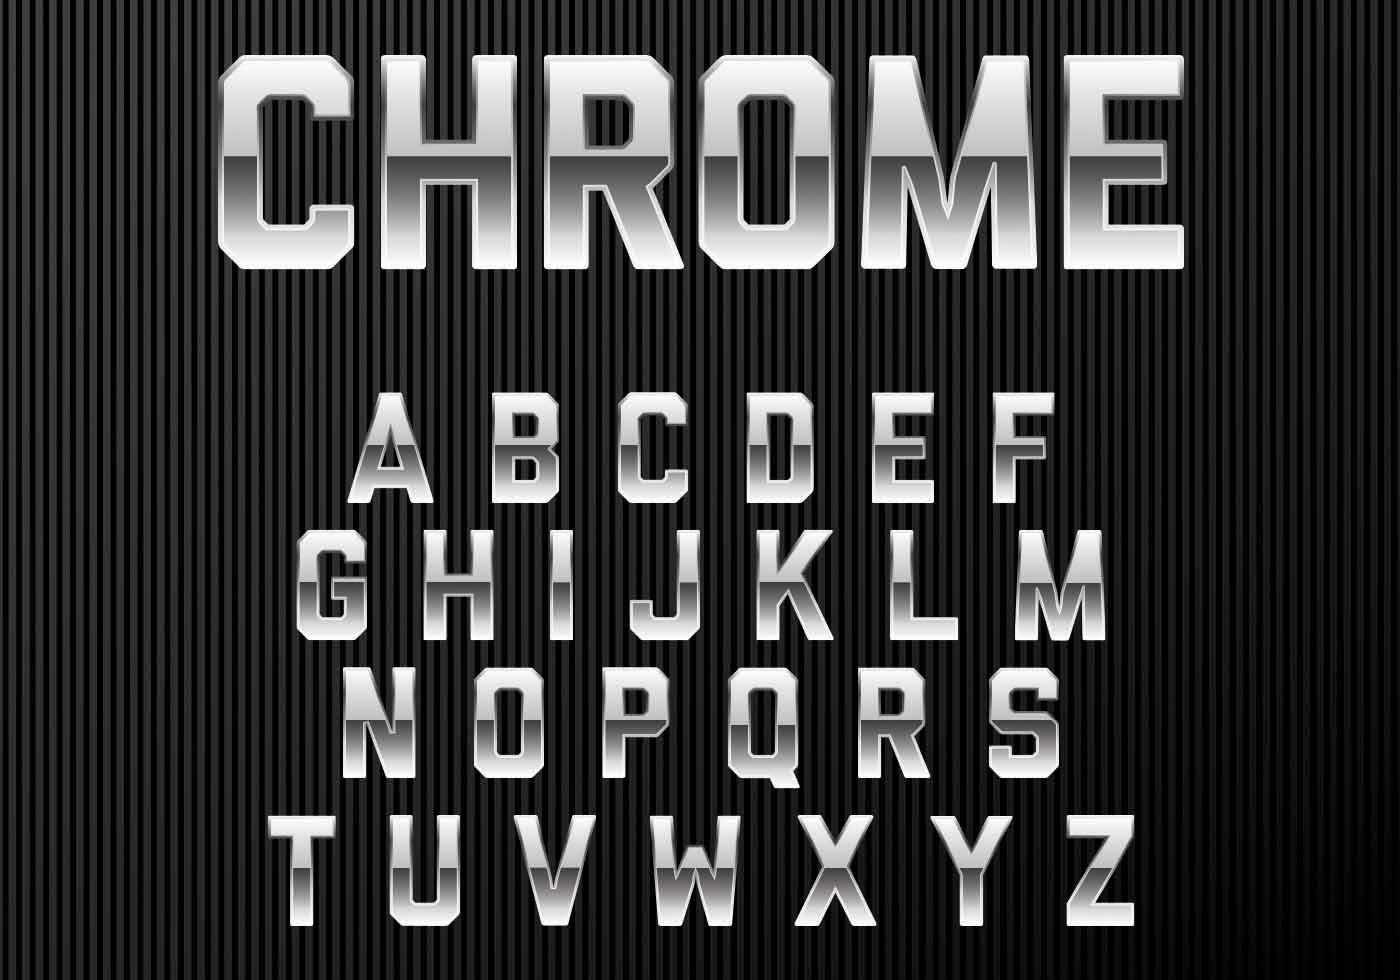 Chrome Alphabet Font 120001 Download Free Vectors Clipart Graphics